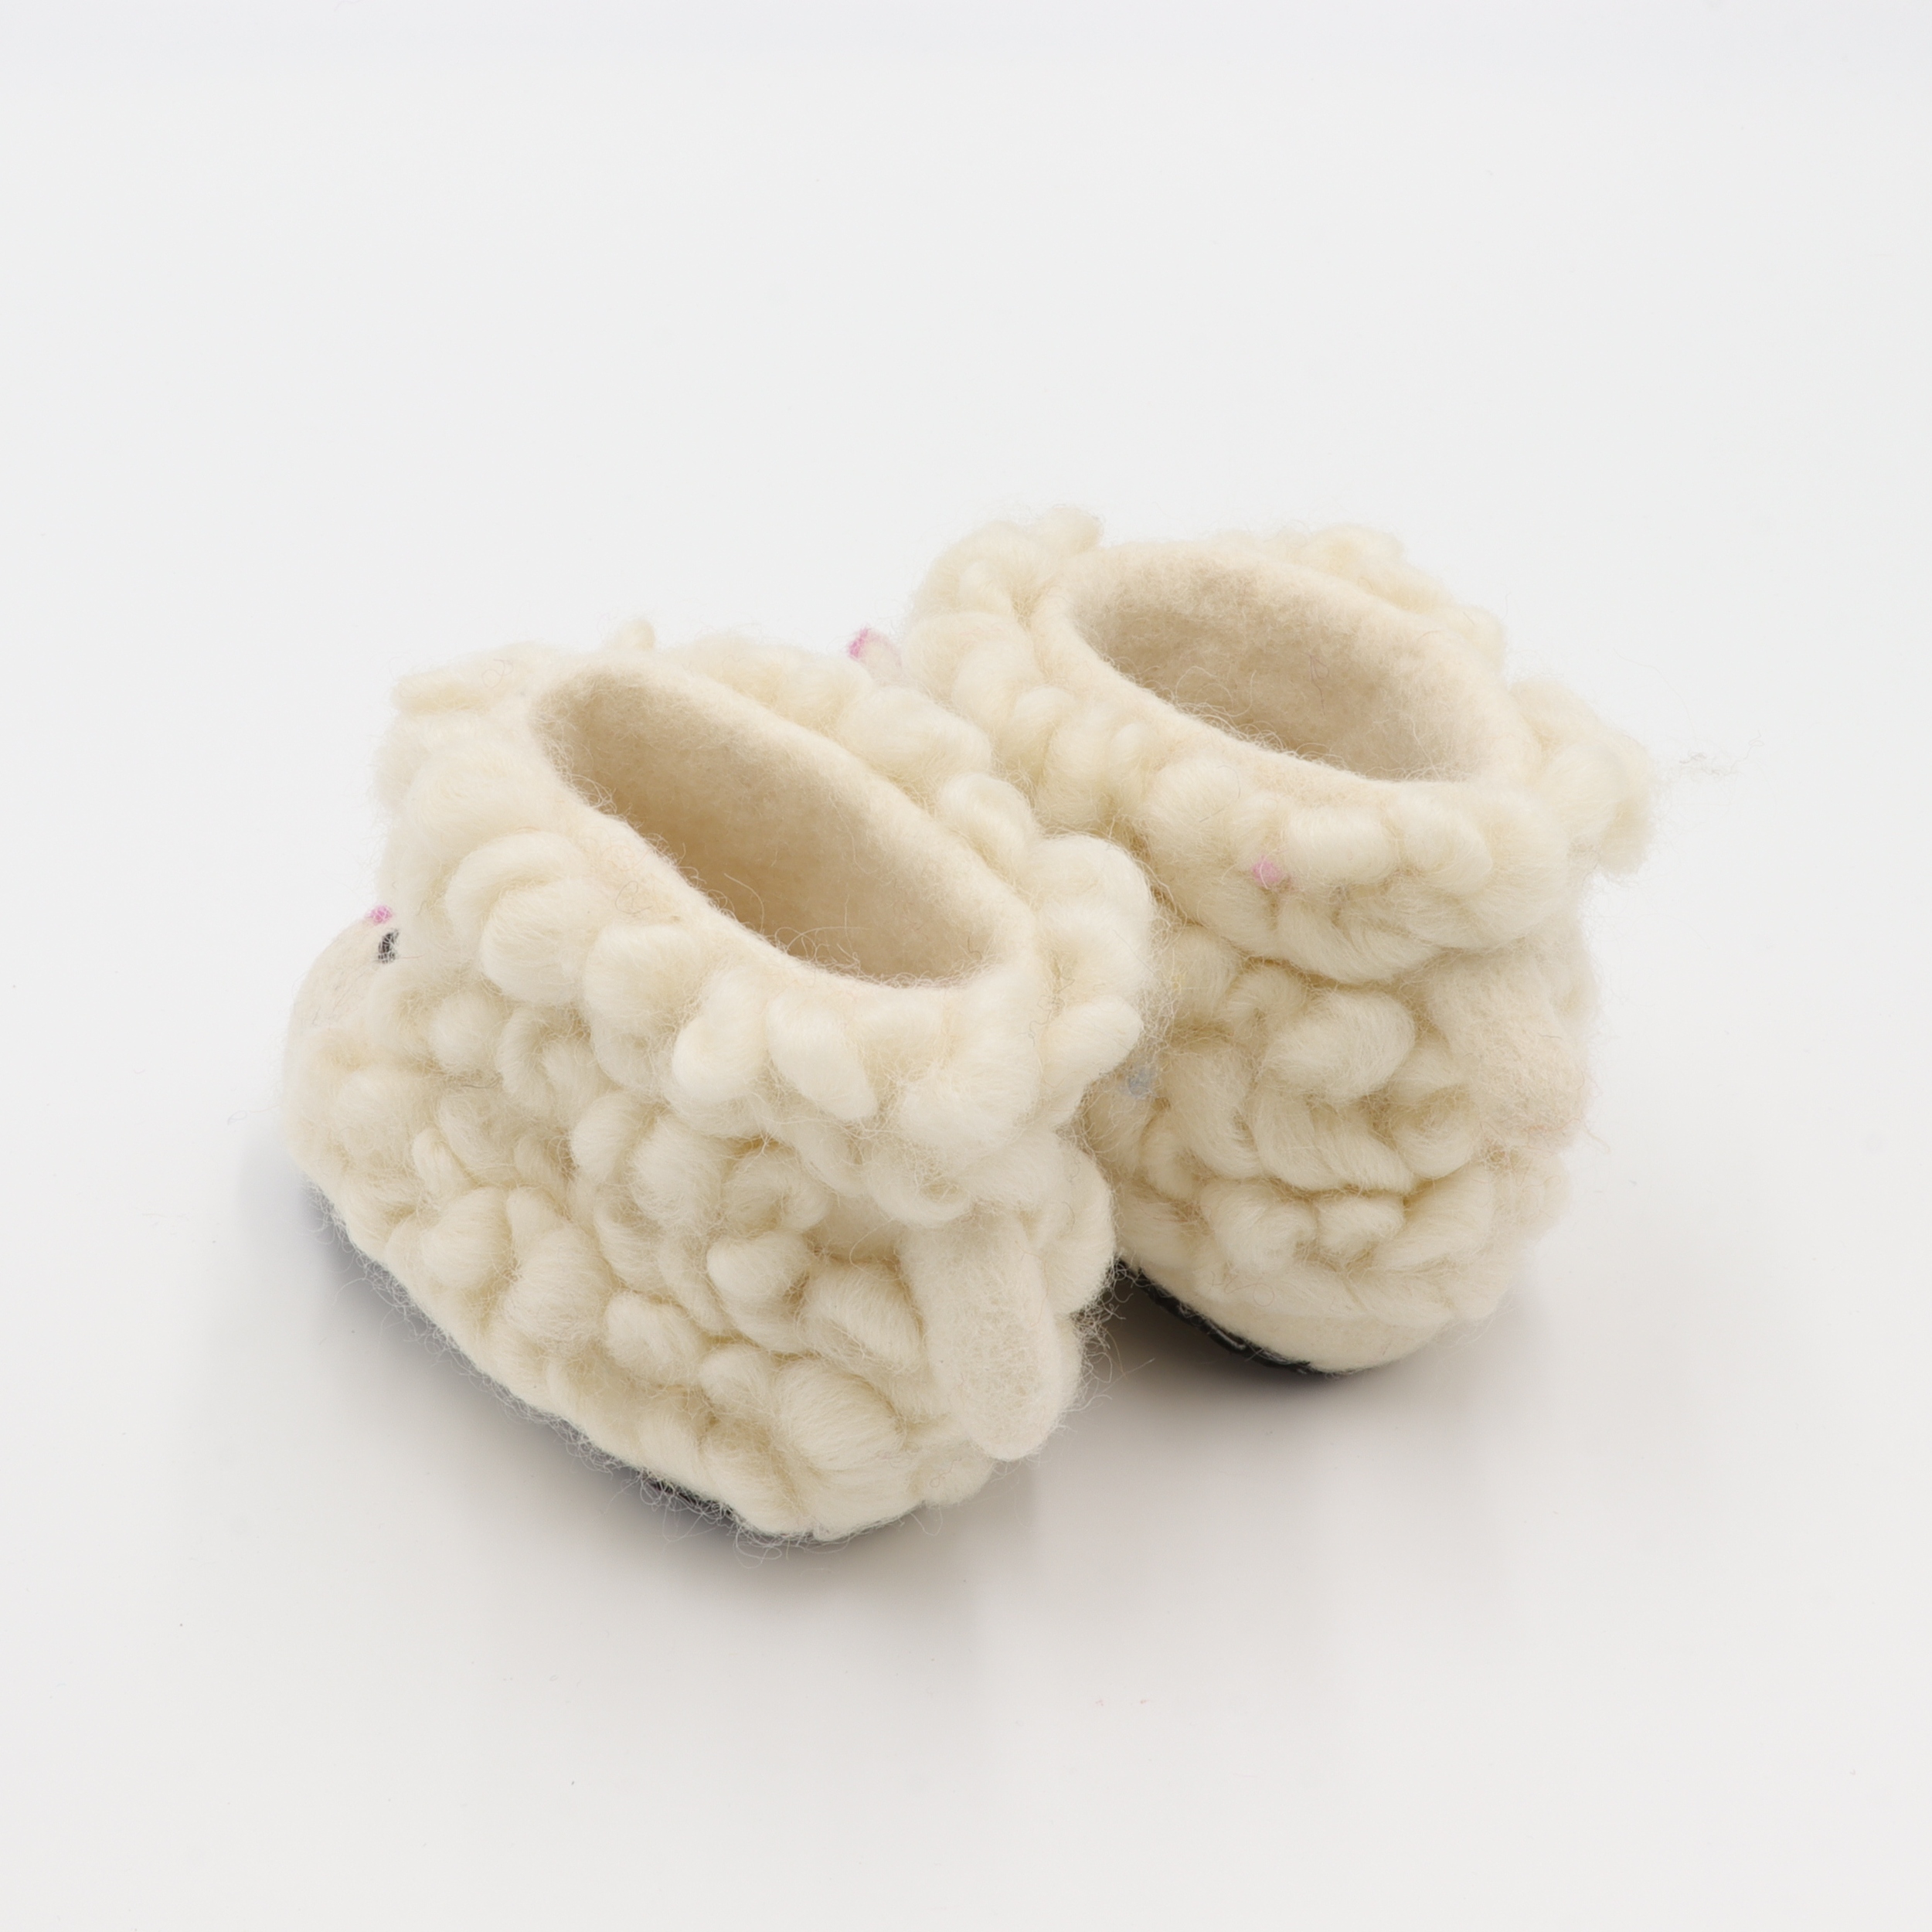 Schuhe aus Filz für Kinder - Das Weiße Schaf - rutschfeste Sohle aus Wildleder